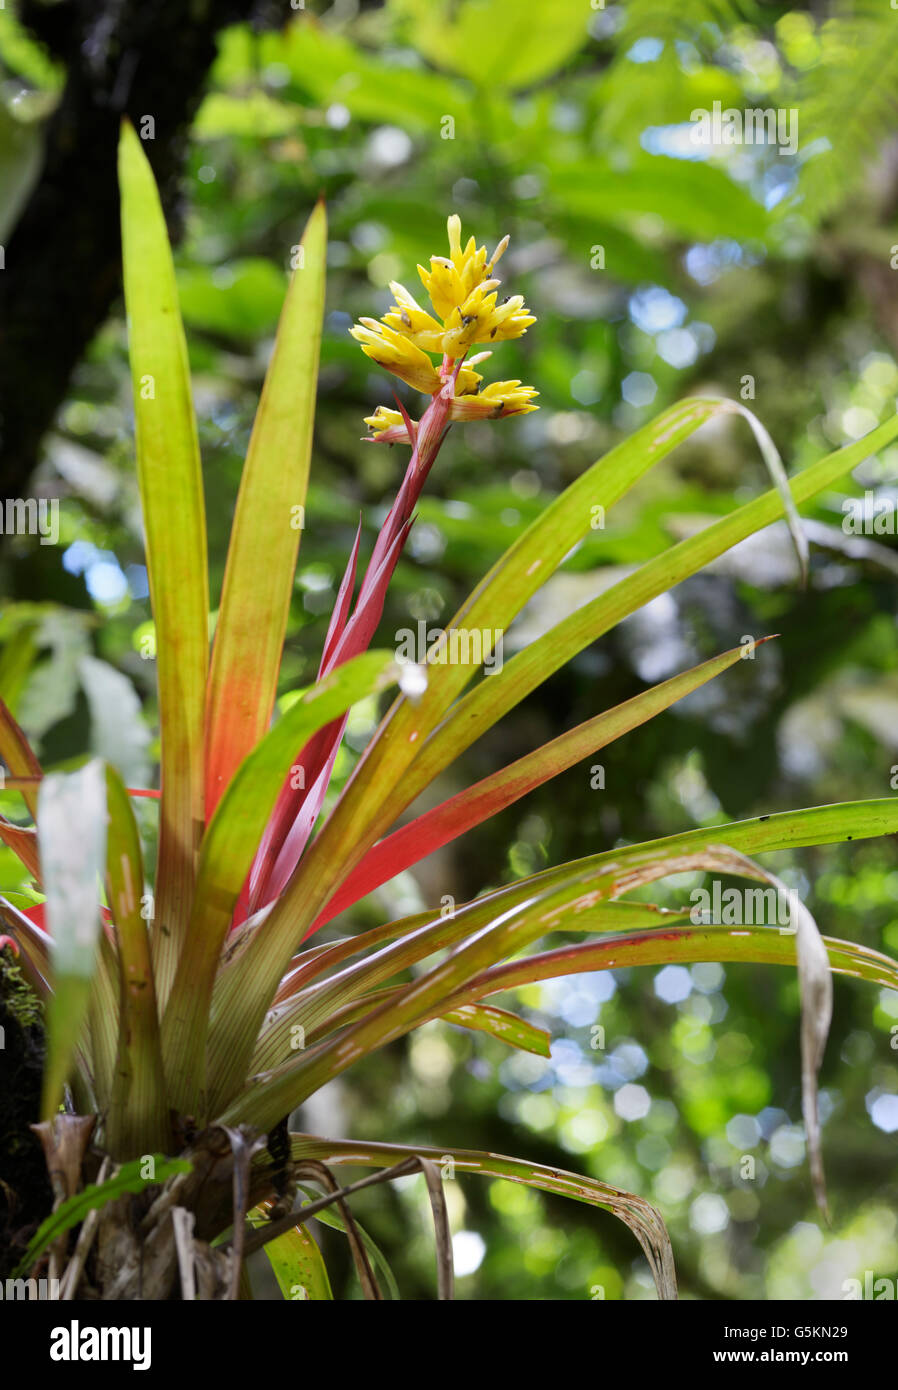 Tropical bromeliad fioritura nella foresta pluviale, Costa Rica. Vedere la descrizione per i dettagli della posizione Foto Stock